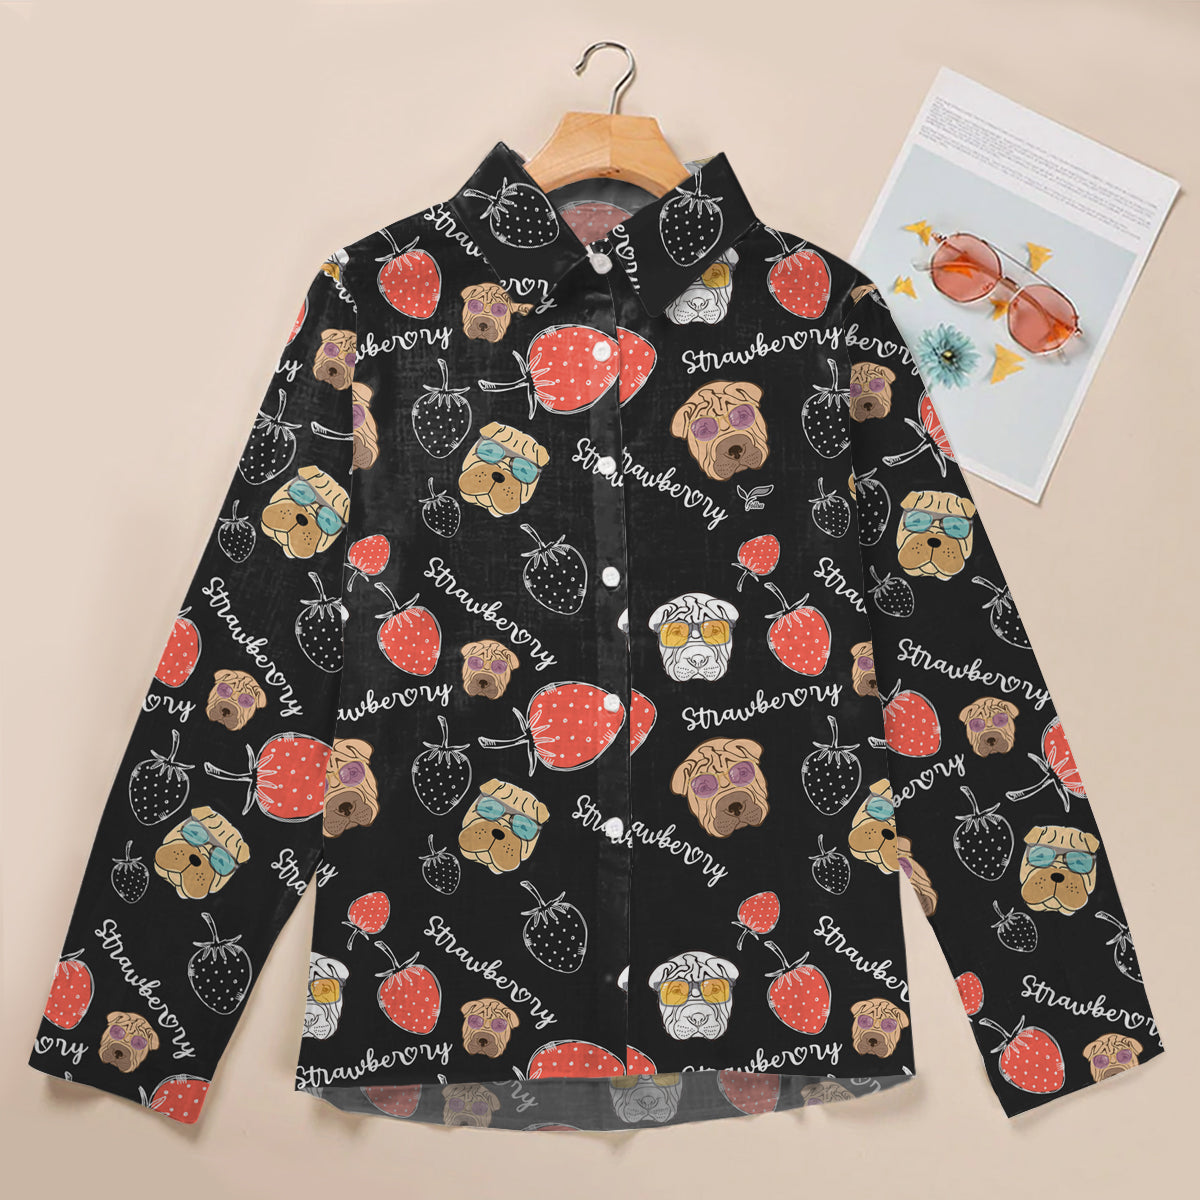 Strawberry And Shar Pei - Women Shirt